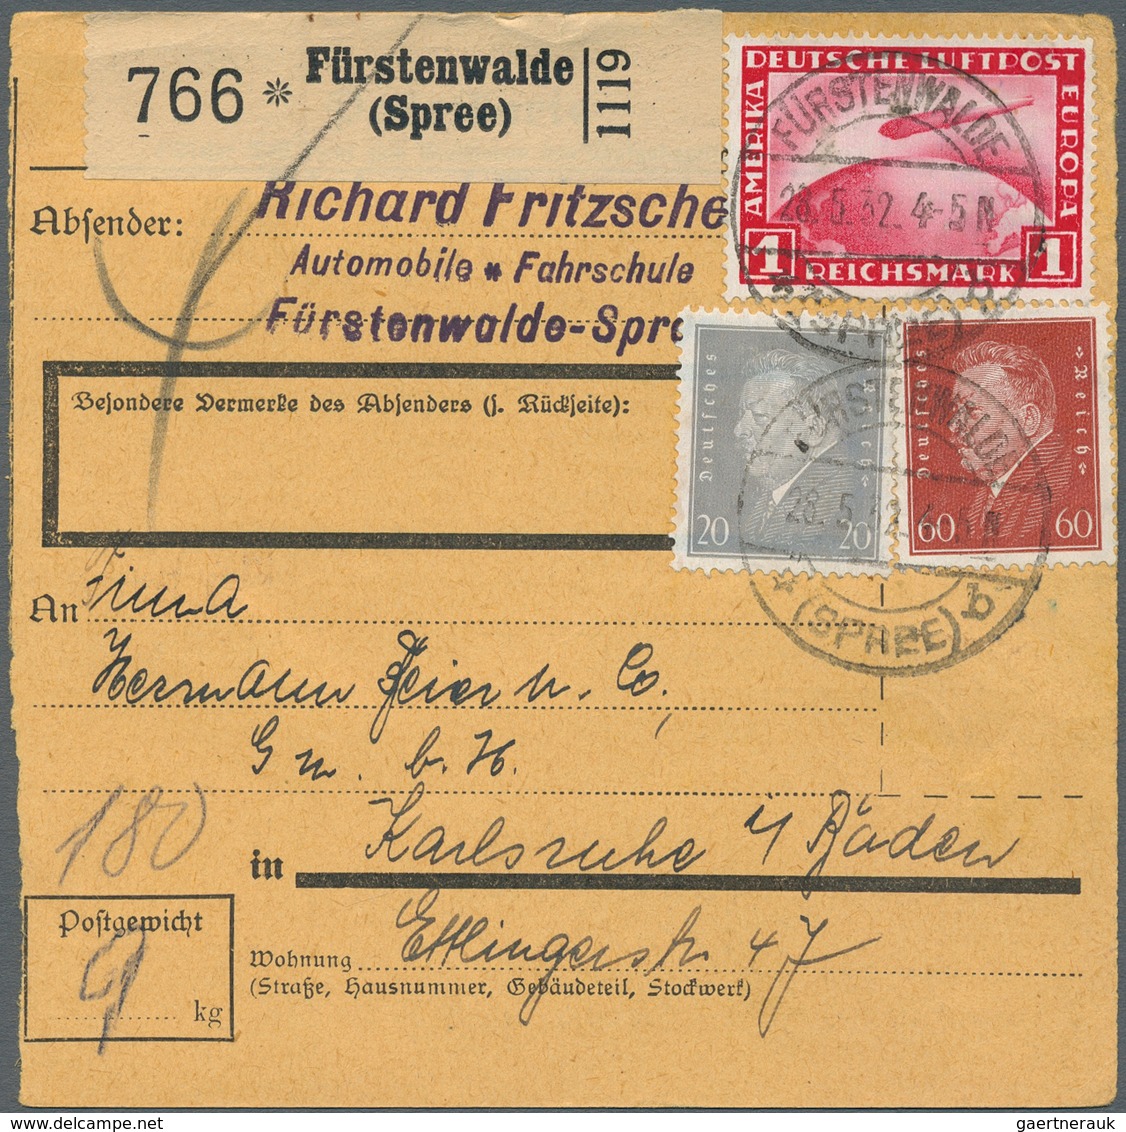 31592 Deutsches Reich - Weimar: 1924/1933, Partie von ca. 65 Briefen, Karten und gebrauchten Ganzsachen, d